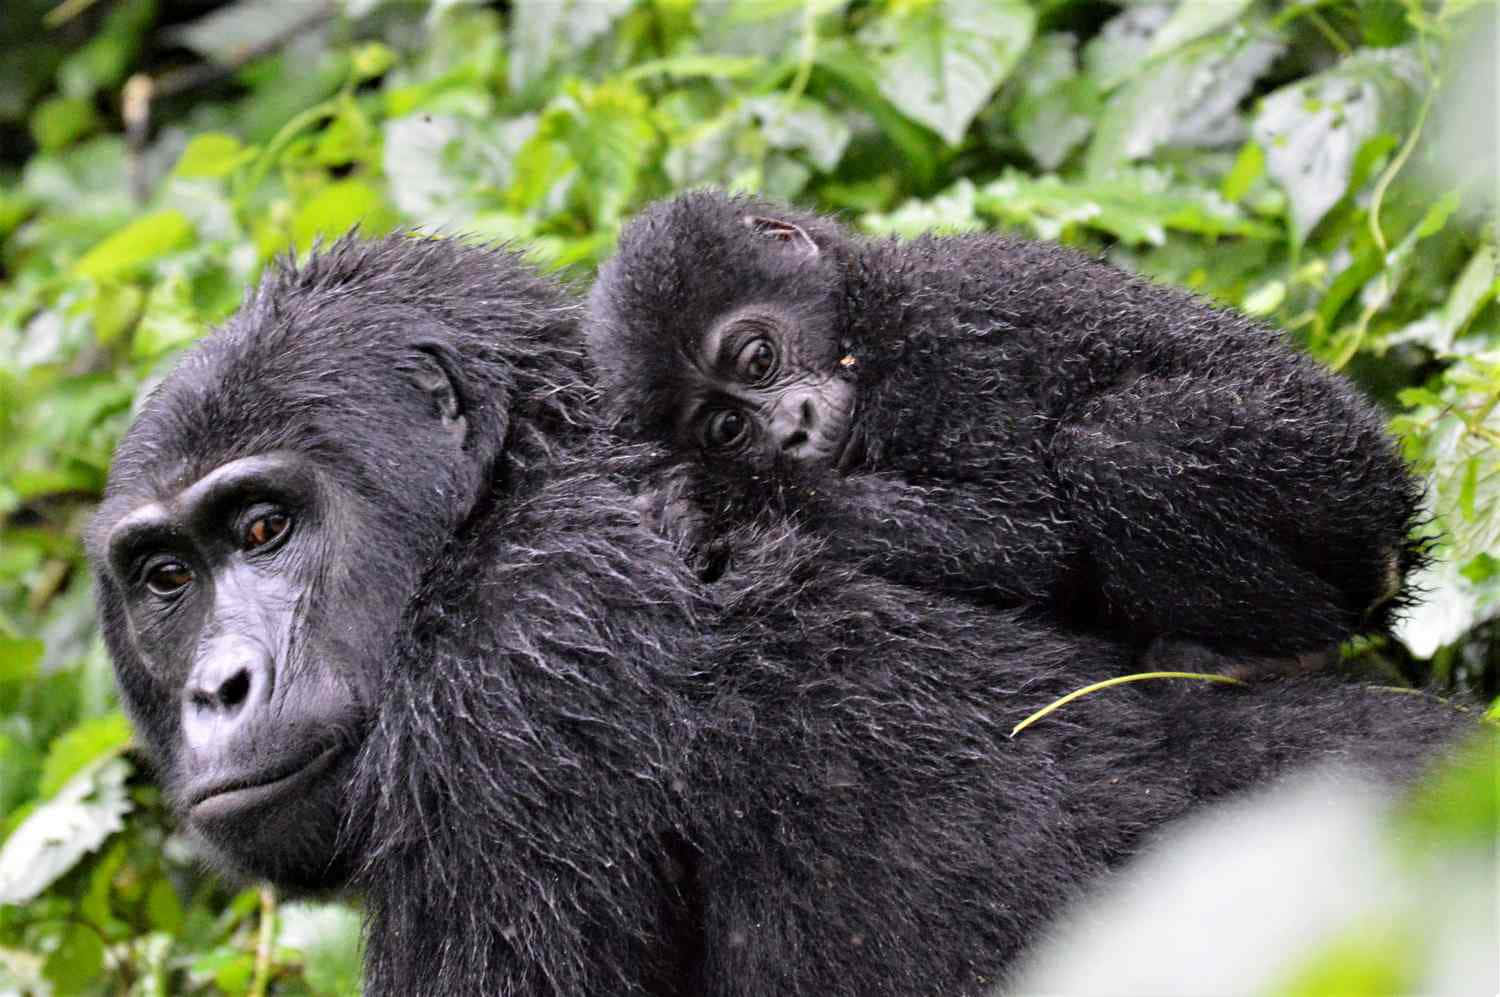 Etsmukt Nærbillede Af En Voksen Sølvlrygget Gorilla I Dens Naturlige Habitat.